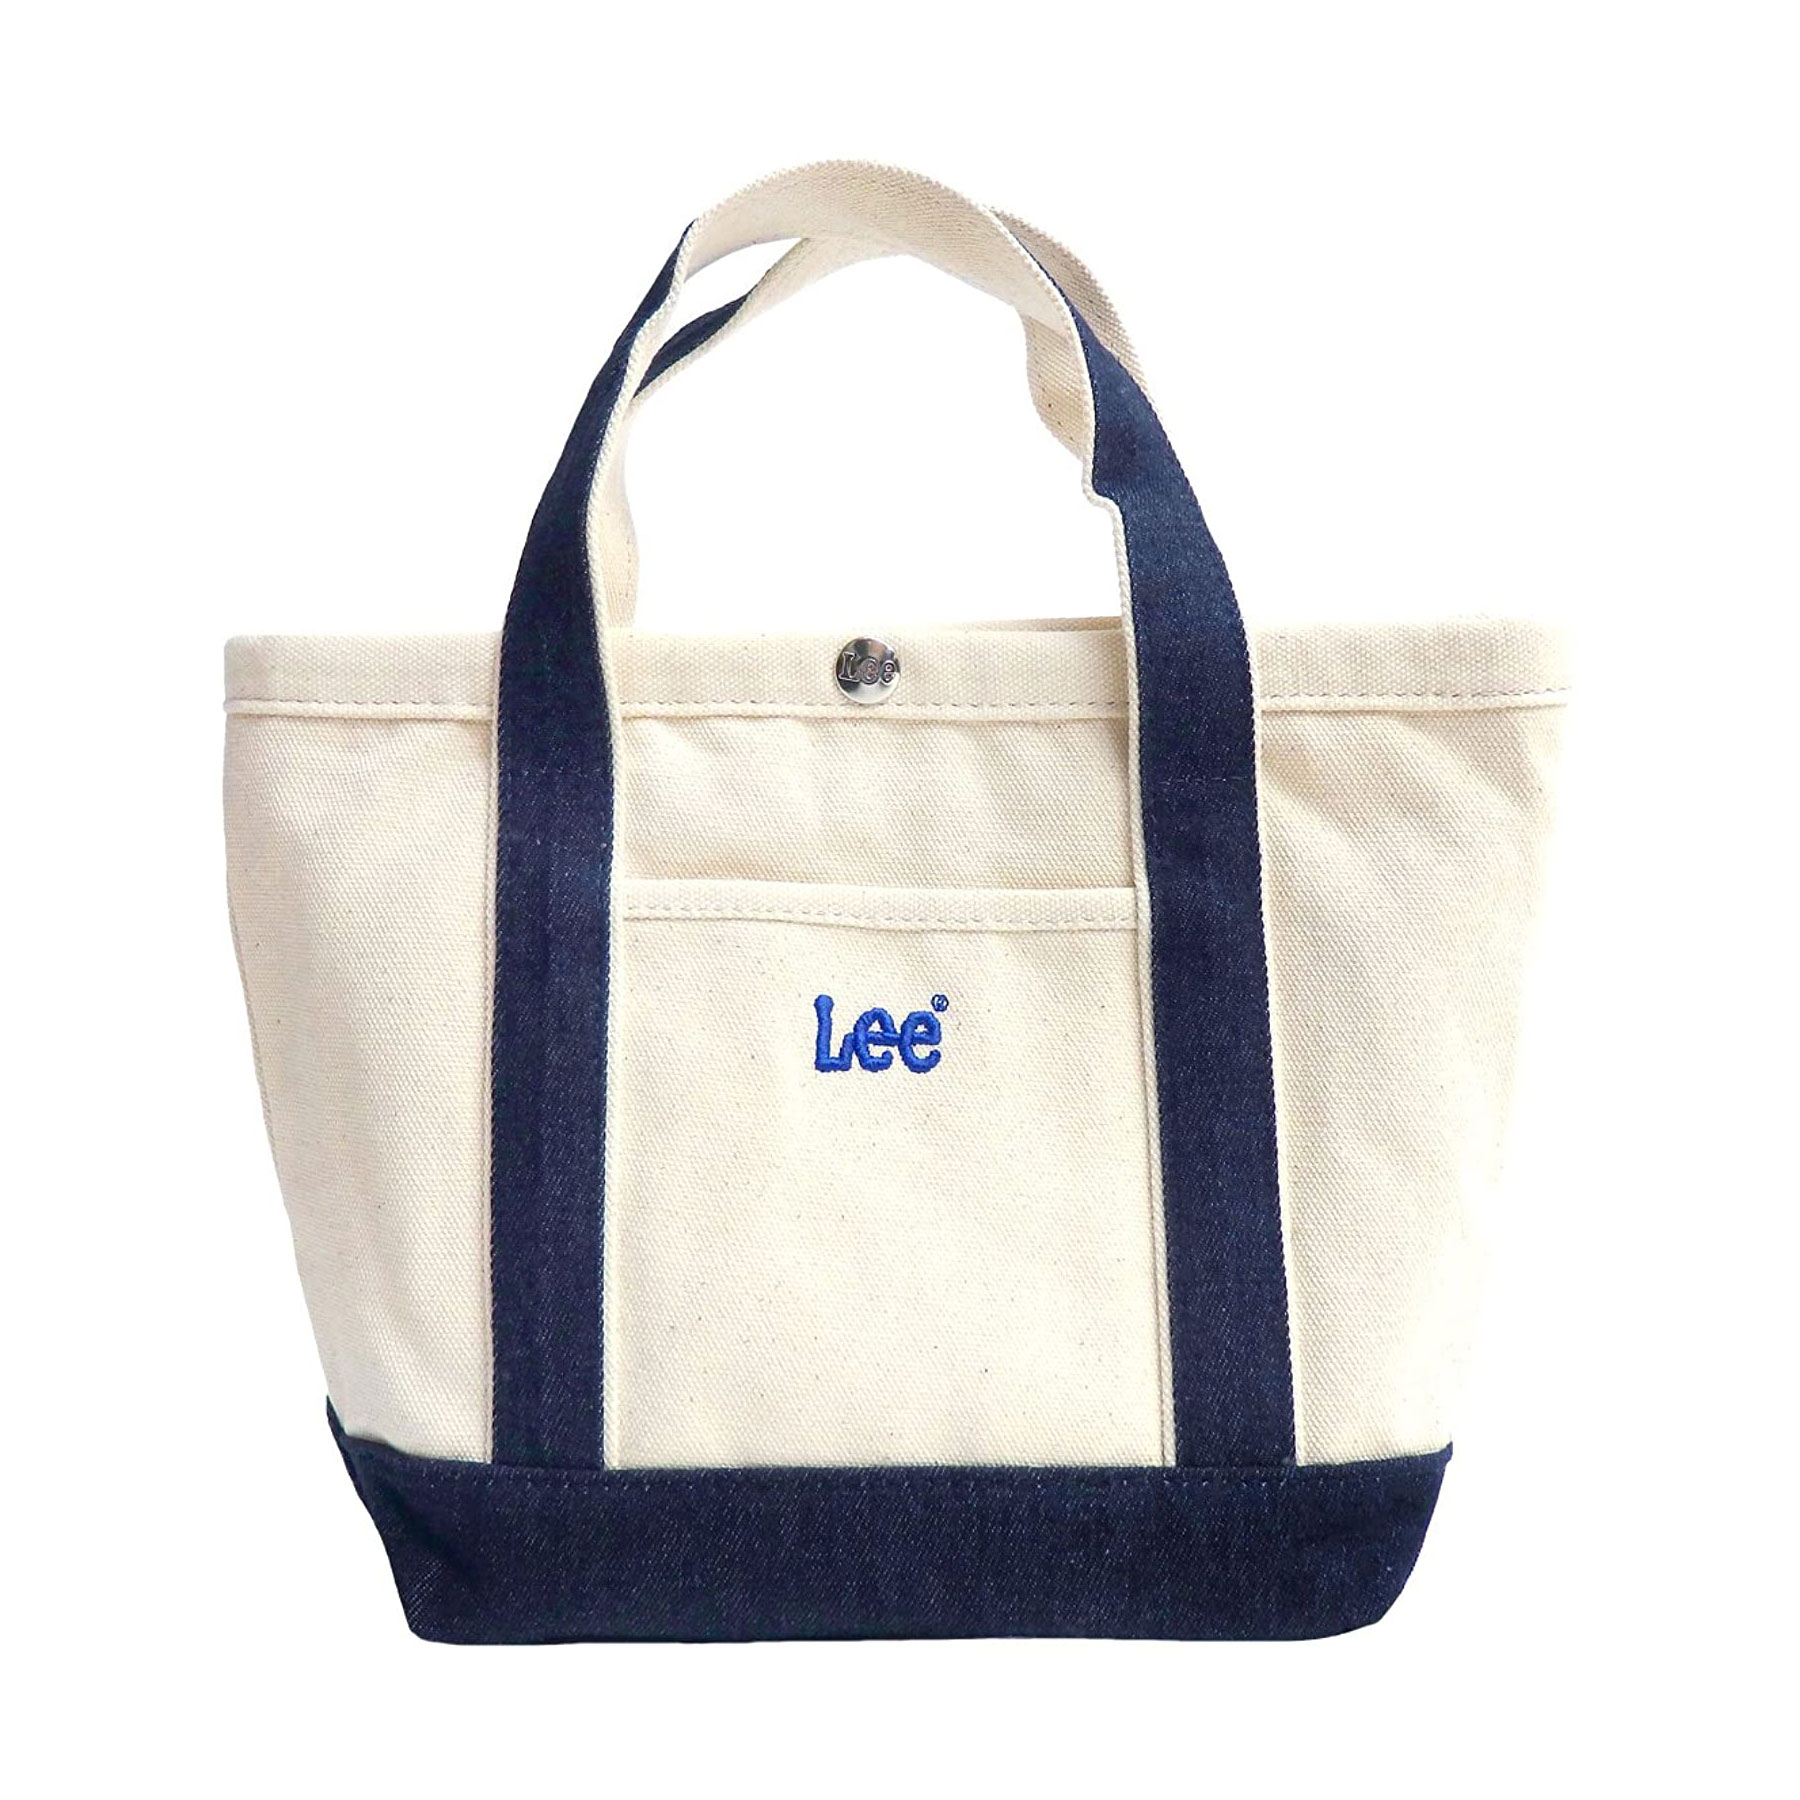 ロゴが可愛い「Lee（リー）のトートバッグ」おすすめ6選＆Amazon 